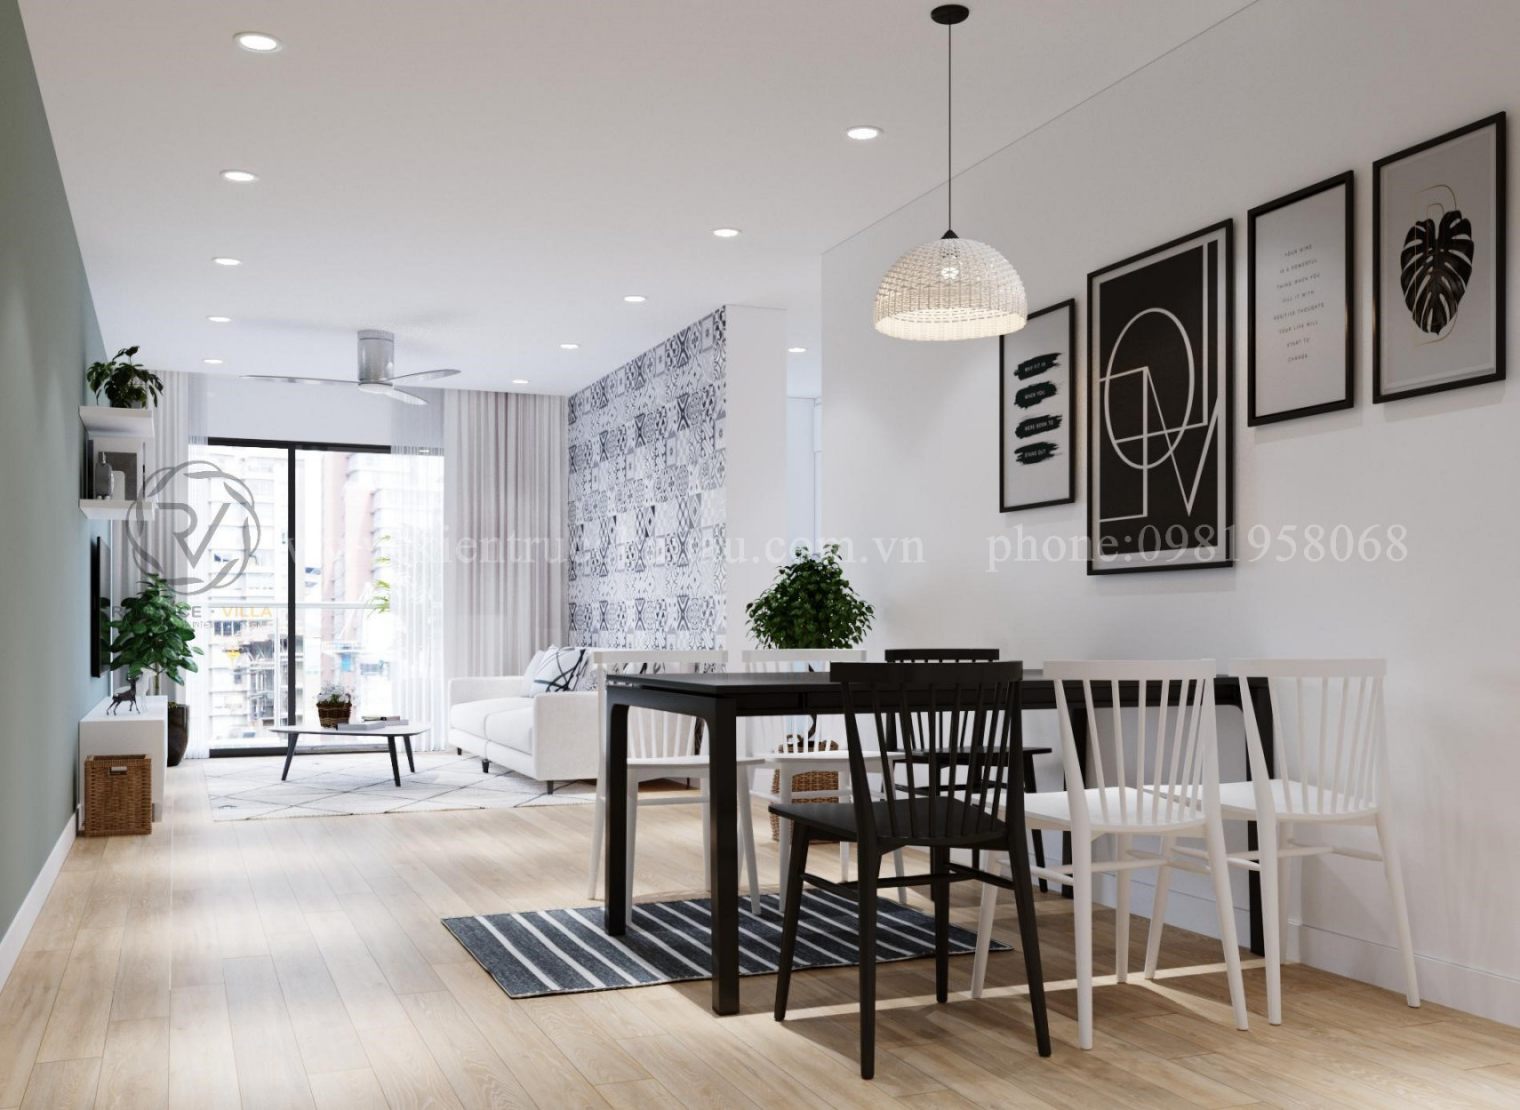 Thiết kế nội thất chung cư giá rẻ với phong cách tối giản